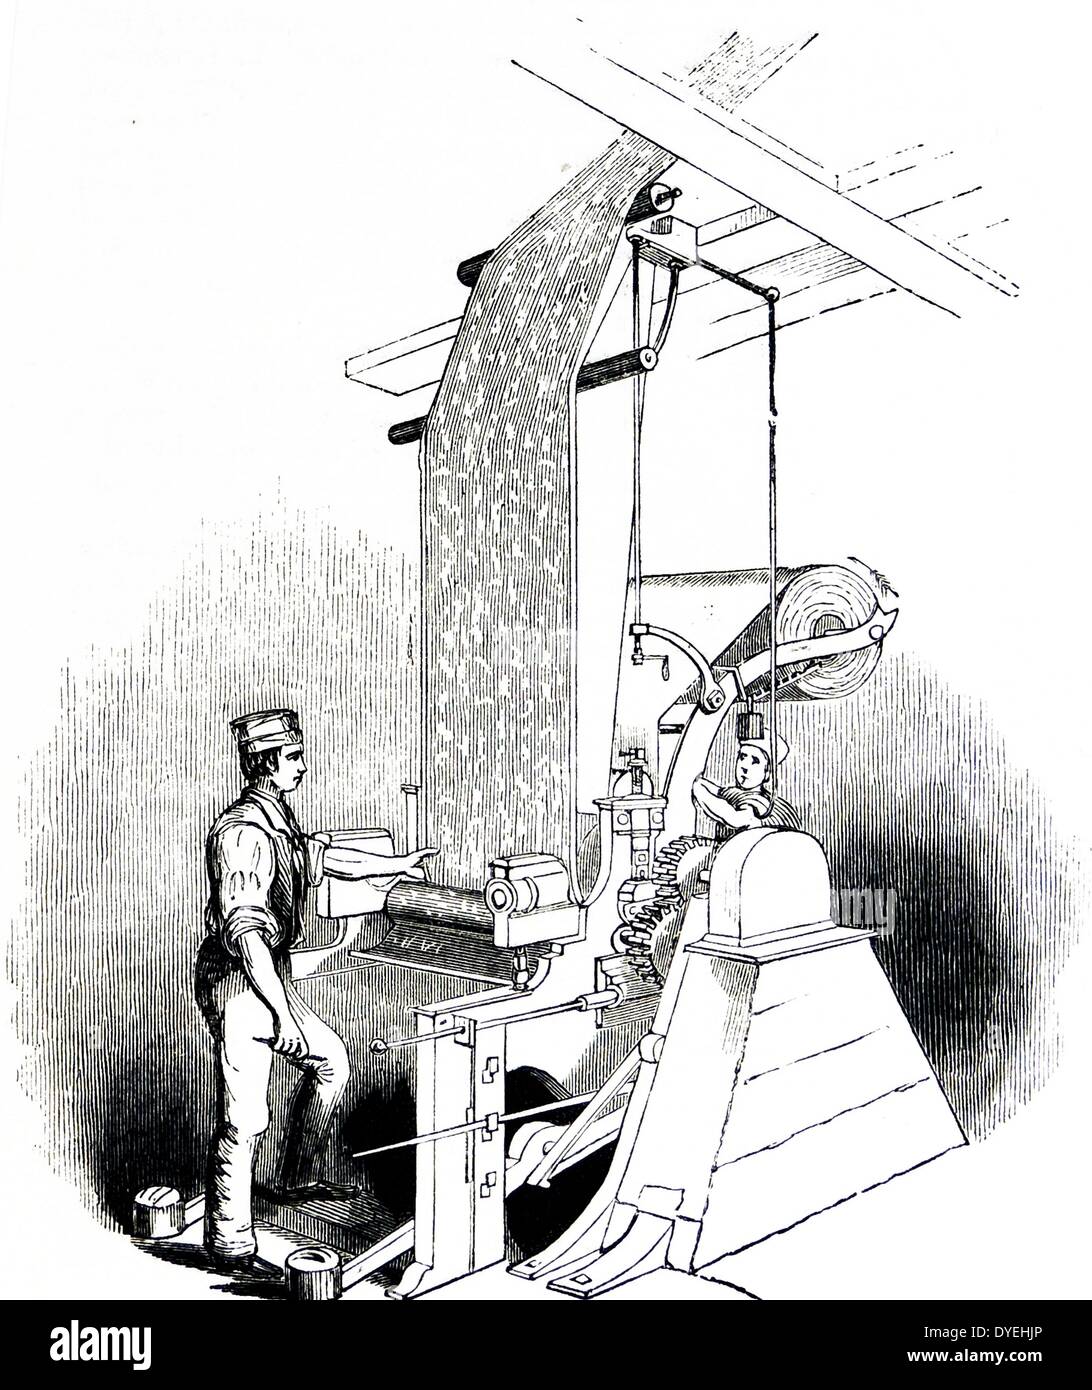 Calico drucken mit einem Zylinder Maschine: Eine separate Zylinder war für jede Farbe verwendet werden, und eine einzelne Maschine könnte 0,7 km Stoff pro Stunde drucken. Kupferstich, London, 1843. Stockfoto